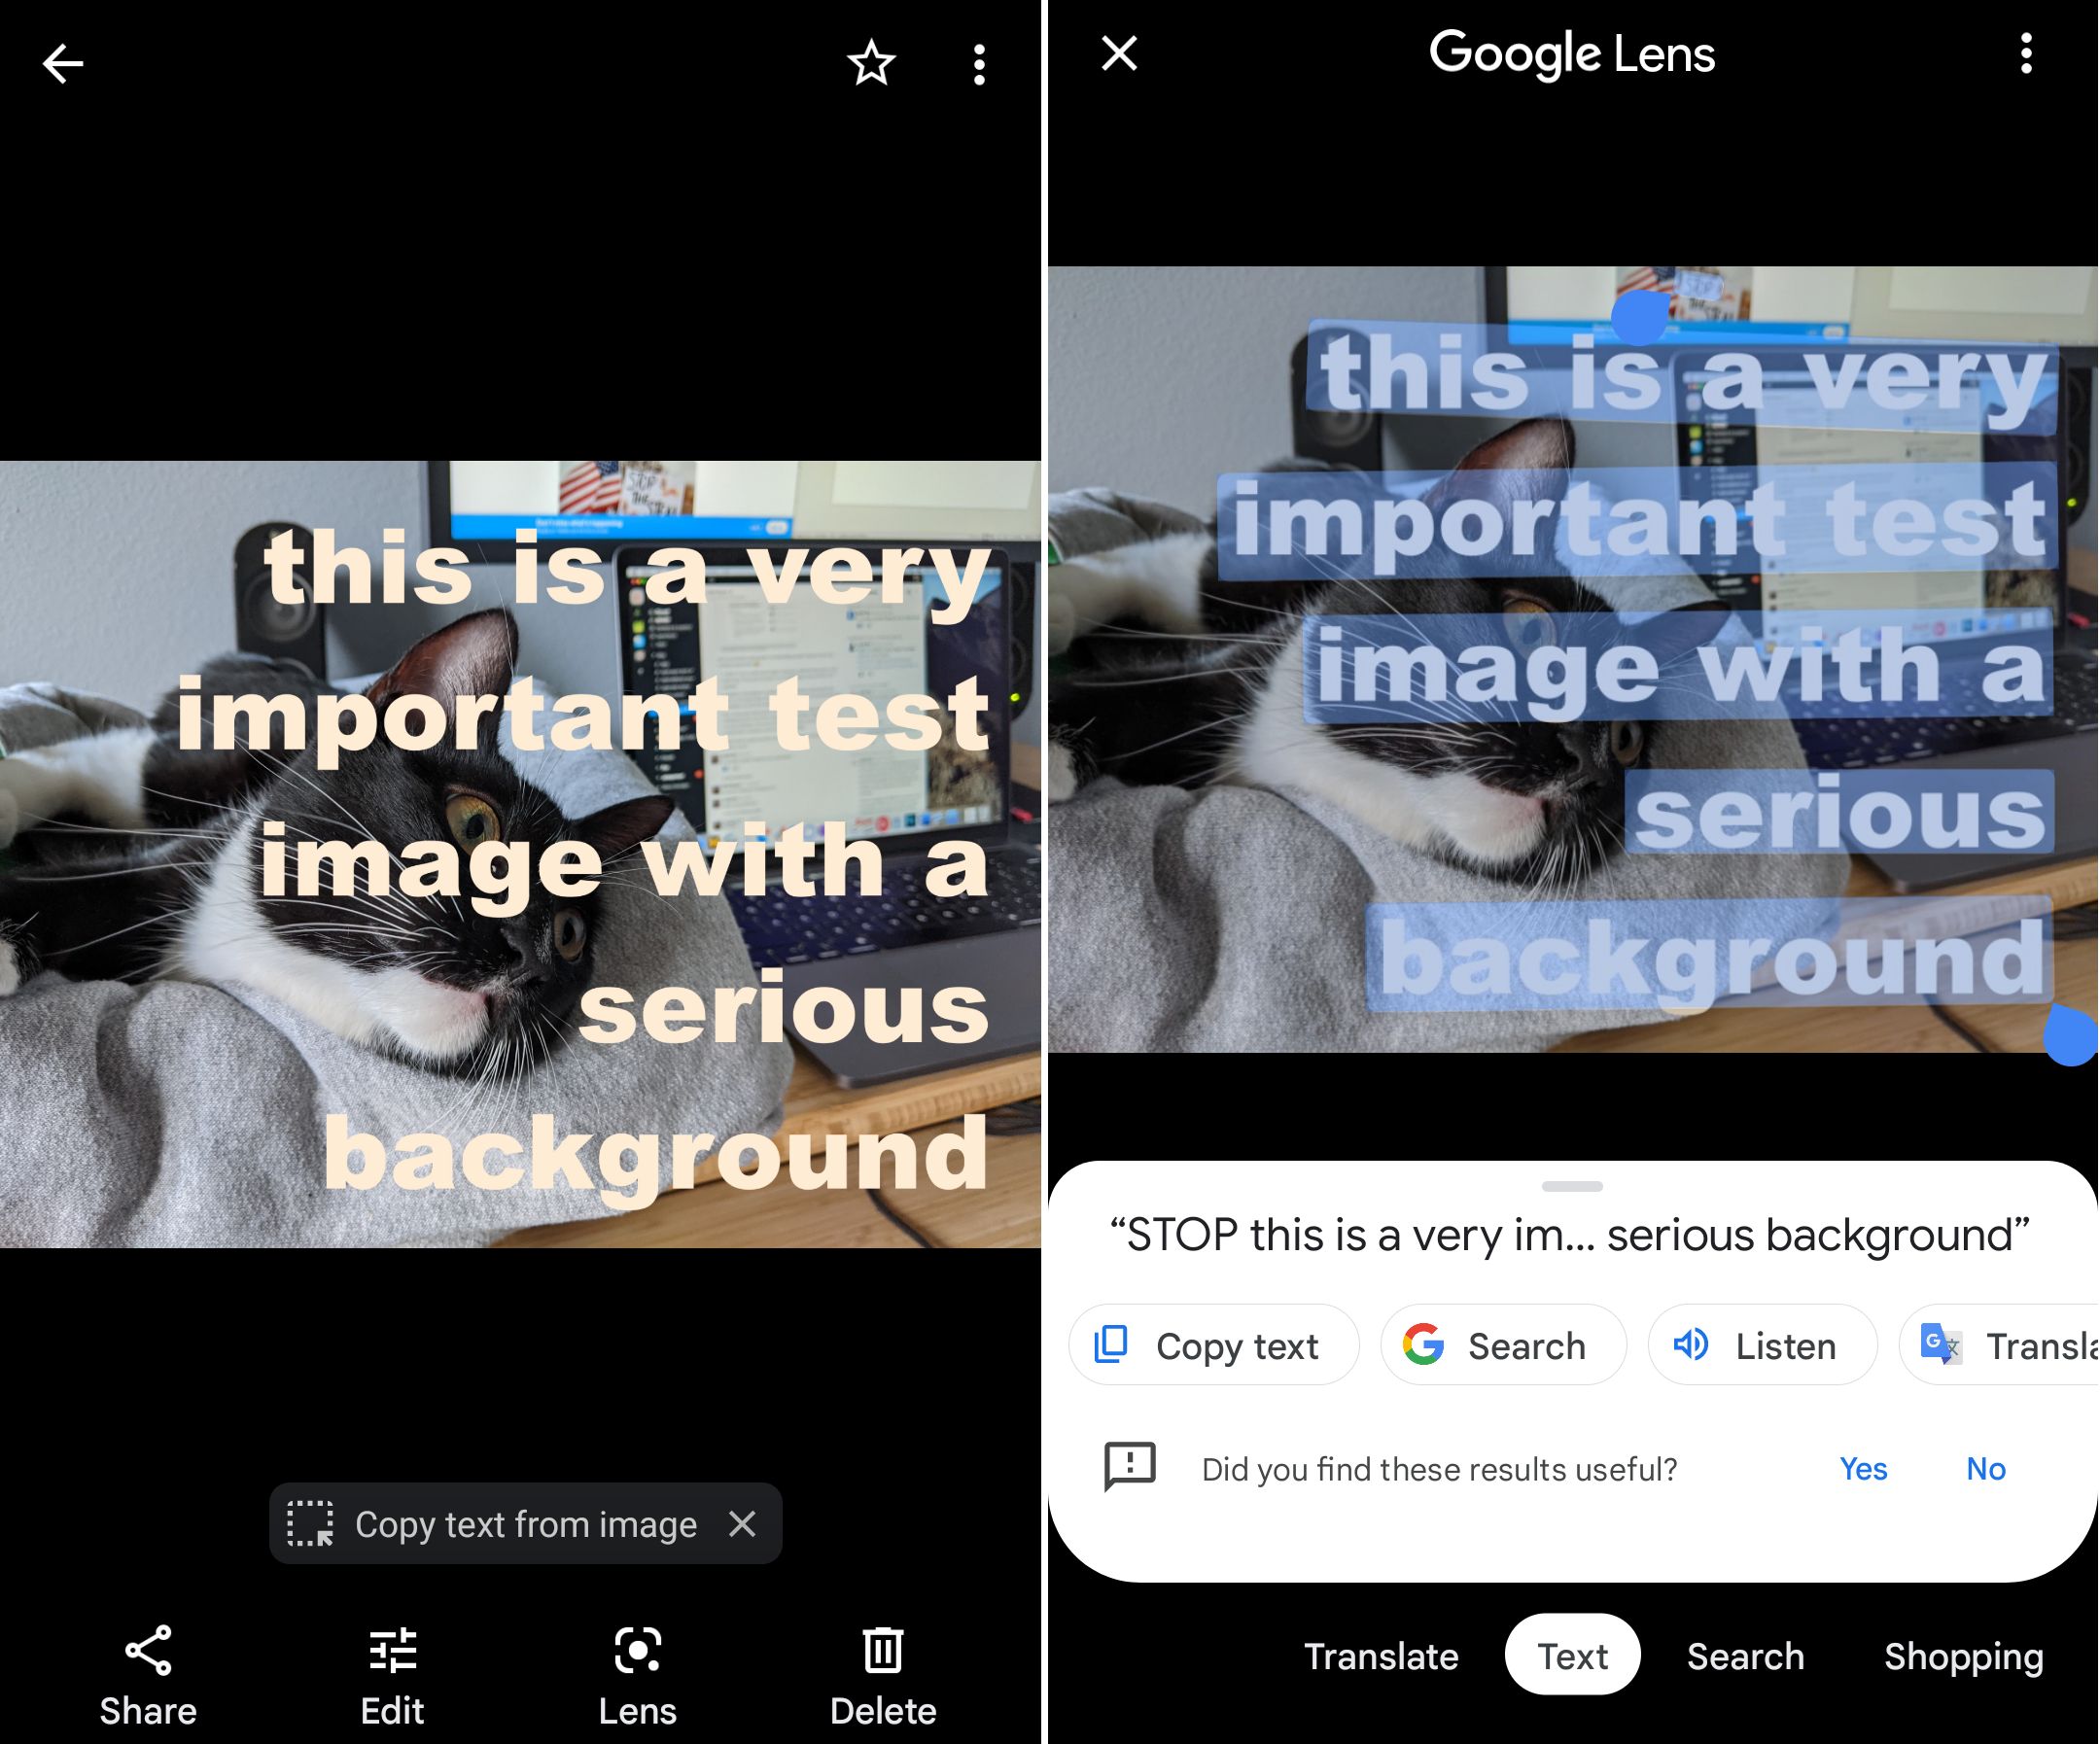 Скриншоты рядом с изображением кота, открытым в Google Фото и приложении «Камера» Android с наложенным и выделенным текстом.